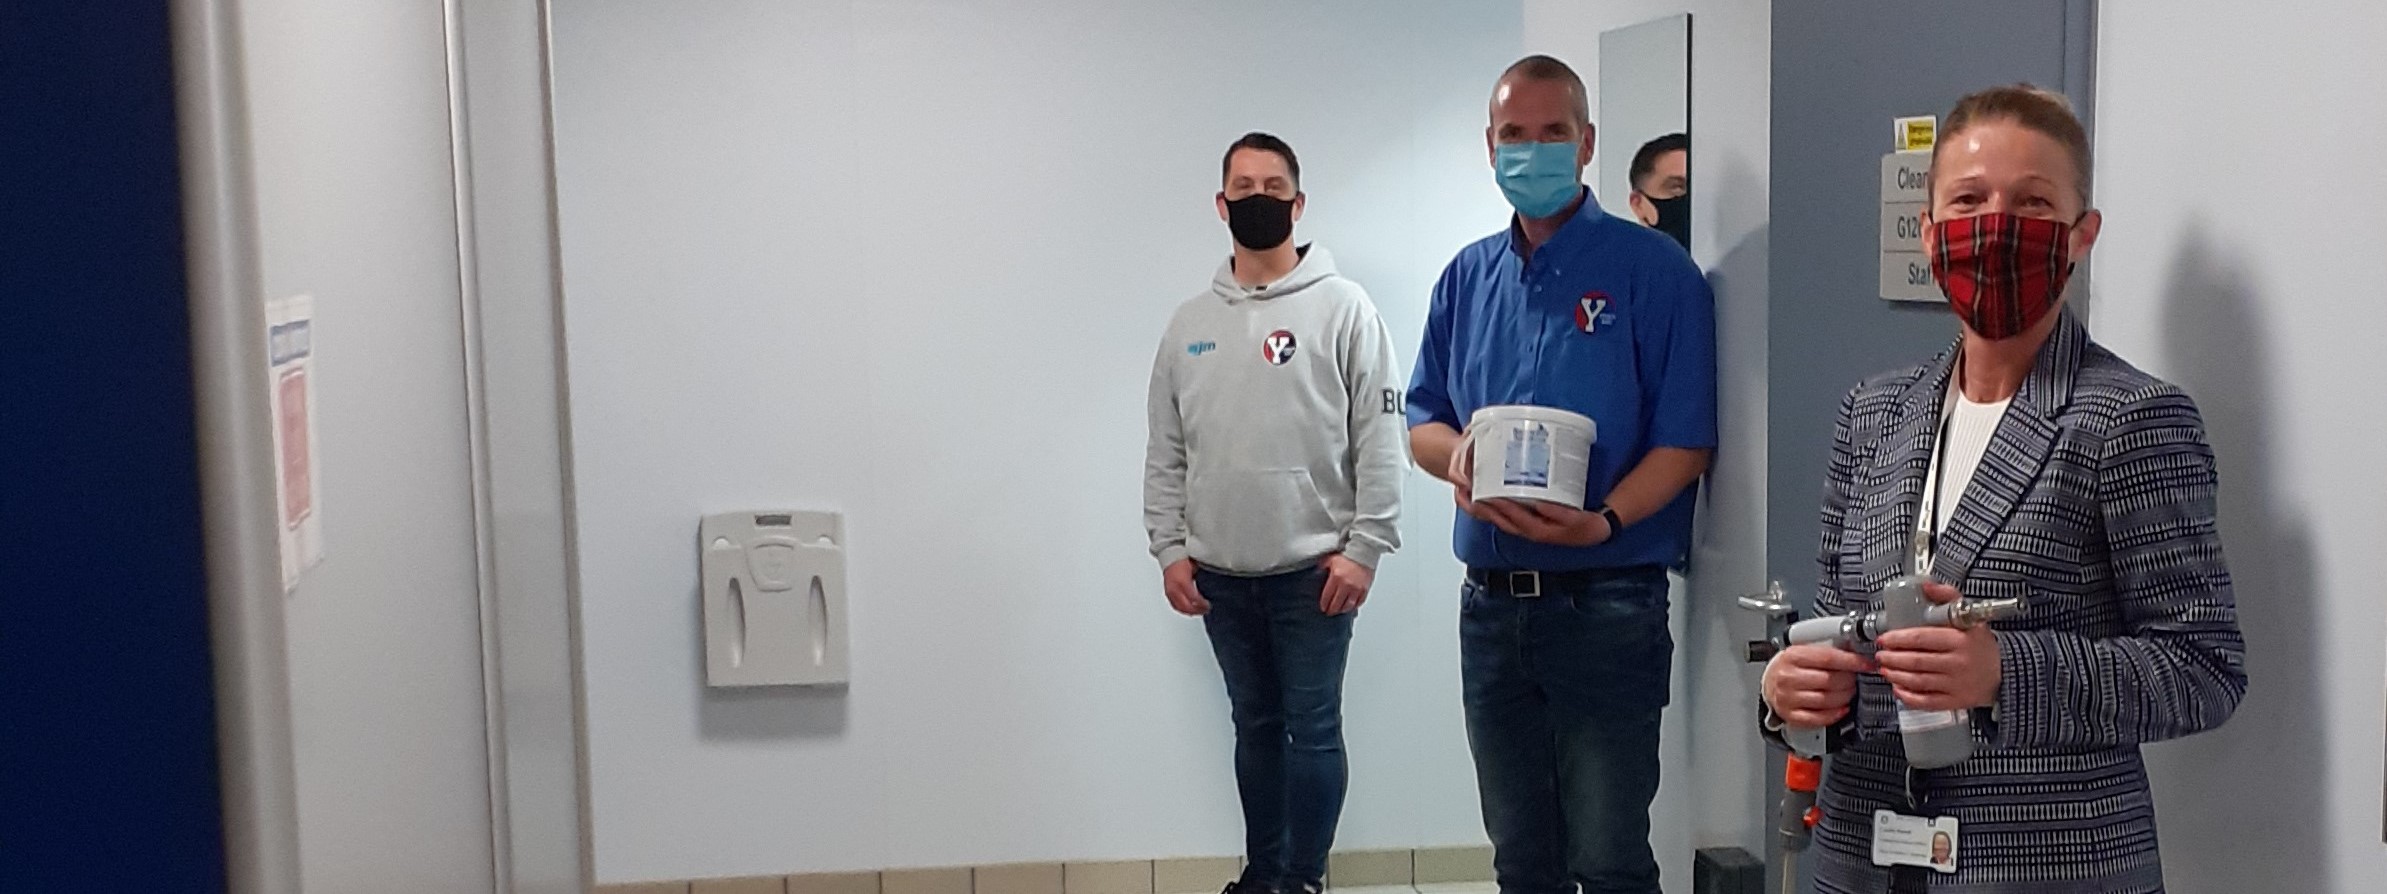 staff with donated sanitiser machine